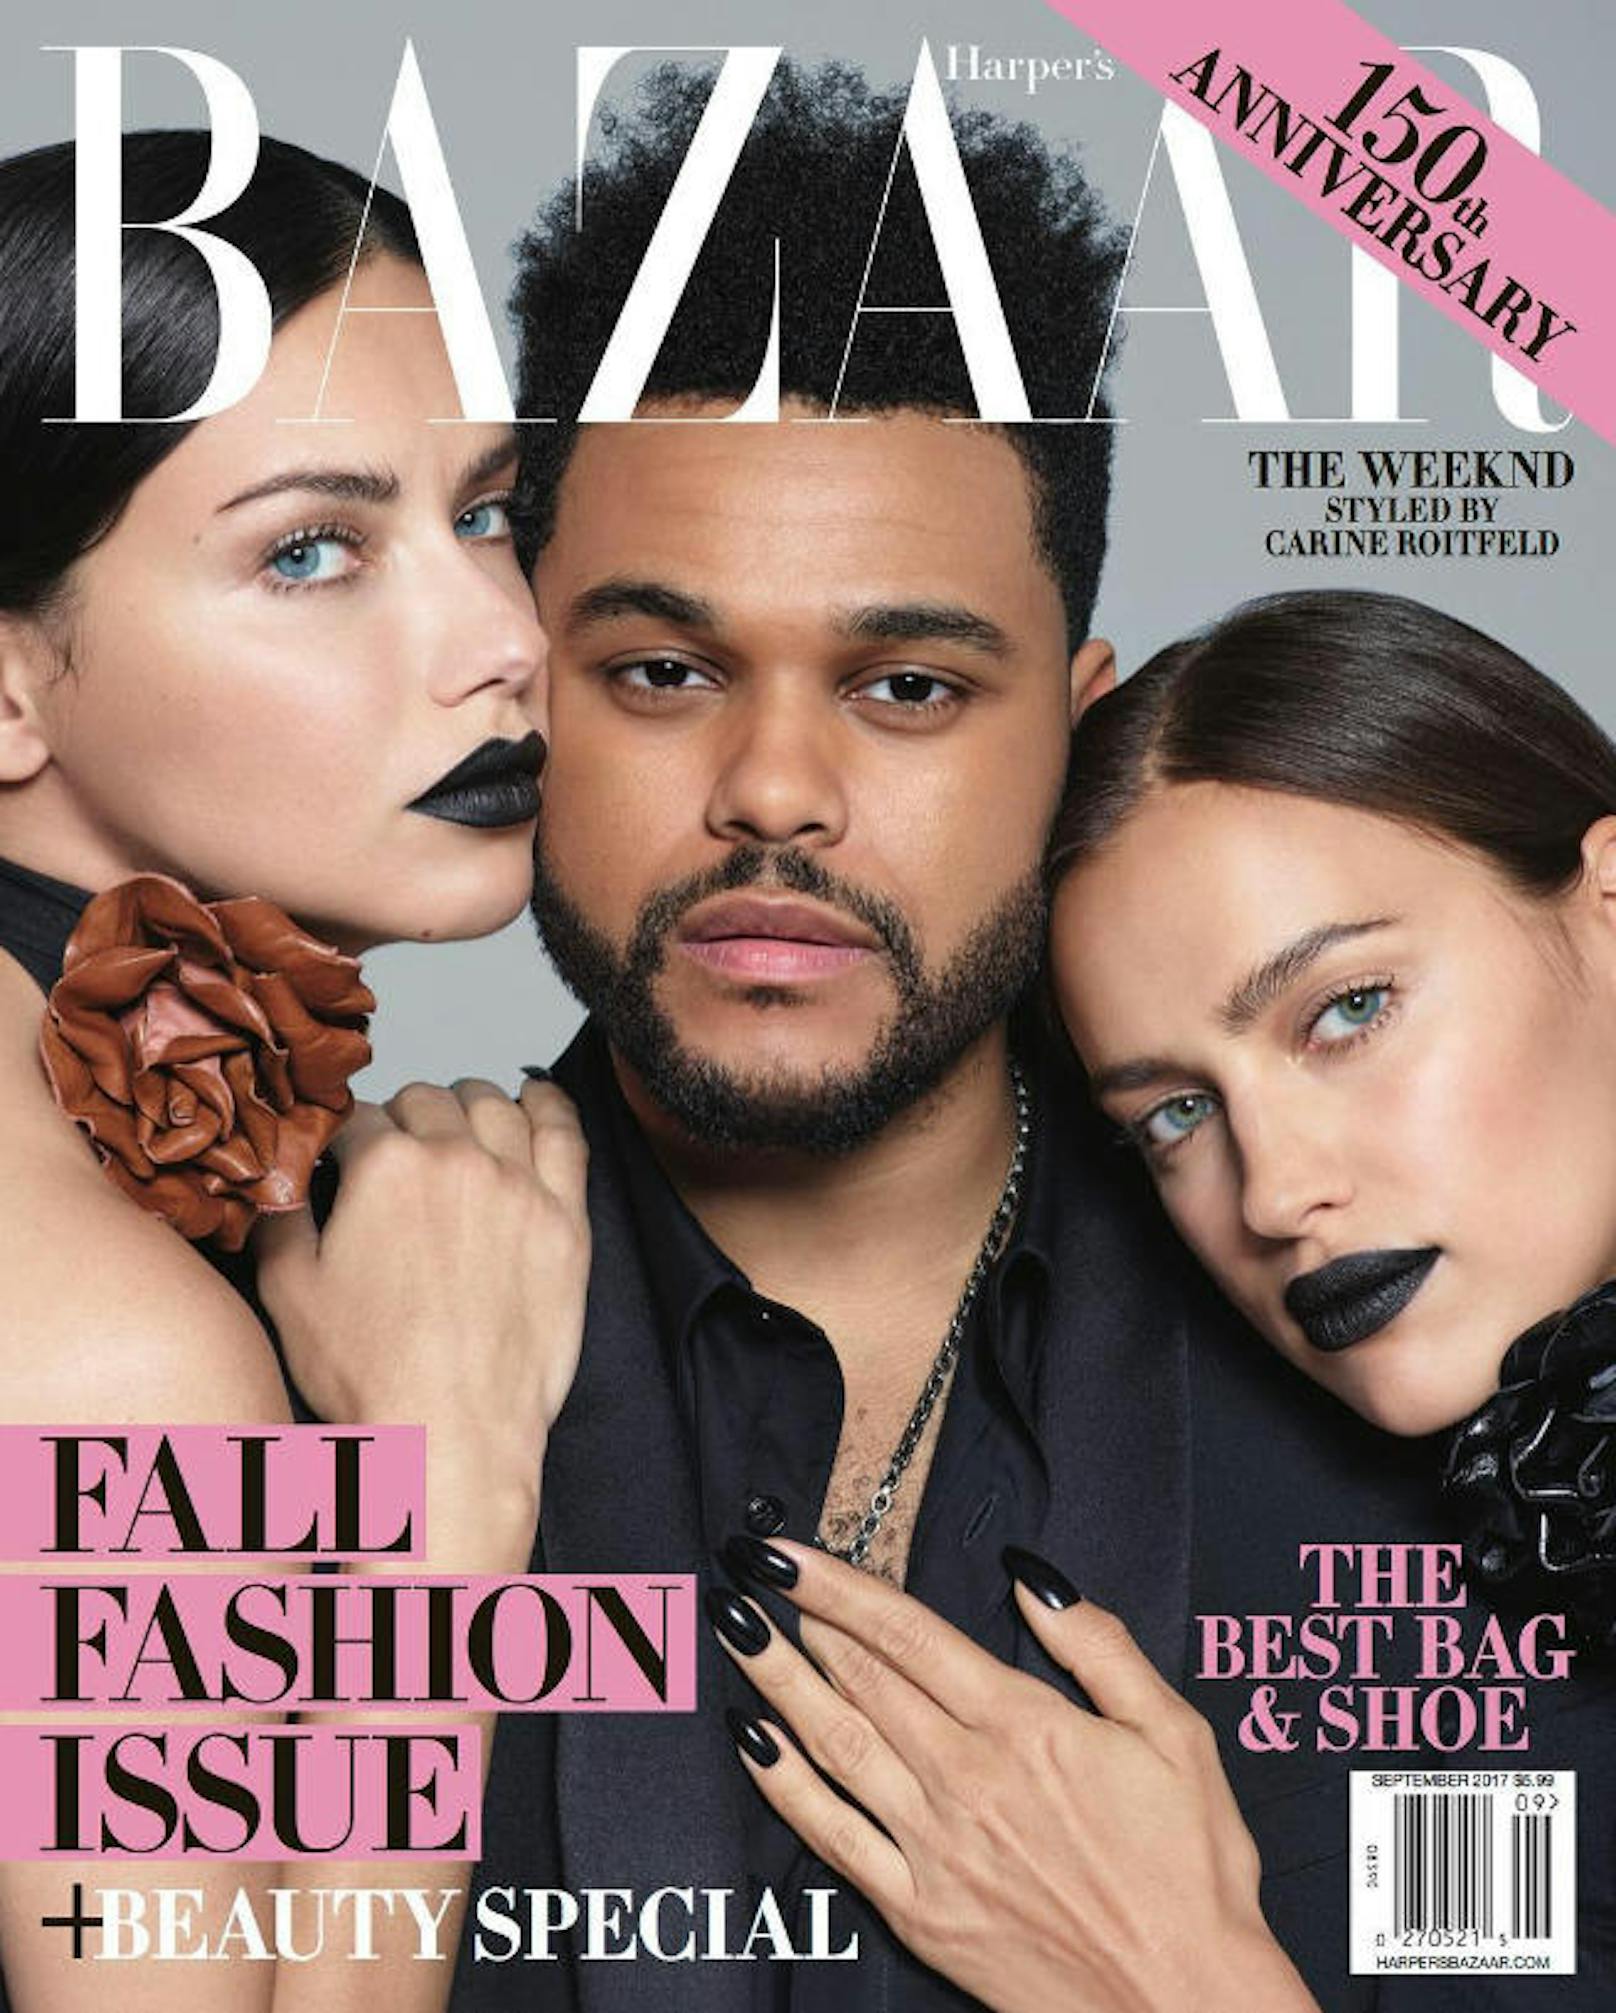 04.08.2017: Adriana Lima zählt gemeinsam mit Musiker The Weeknd und ihrer Modelkollegin Irina Shayk zu den Cover-Stars der neuen "Harper's Bazaar"-Ausgabe.